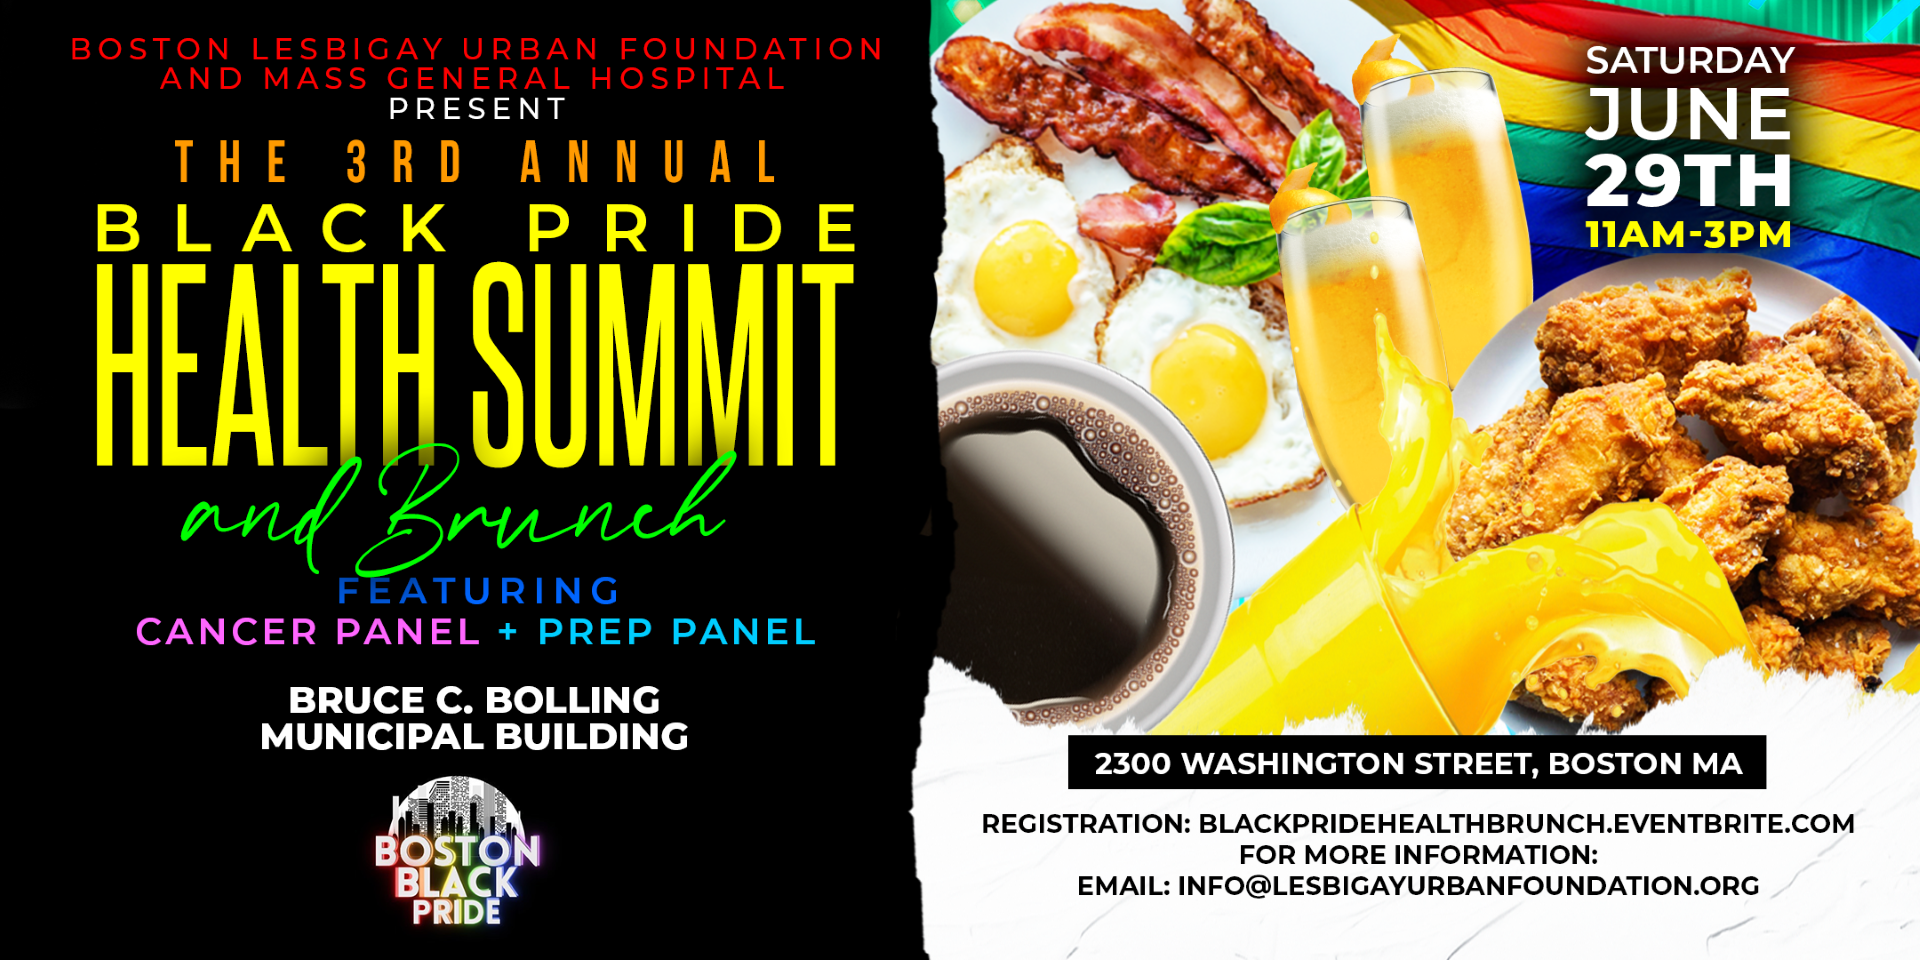 Detalles del evento de la cumbre de salud del orgullo negro